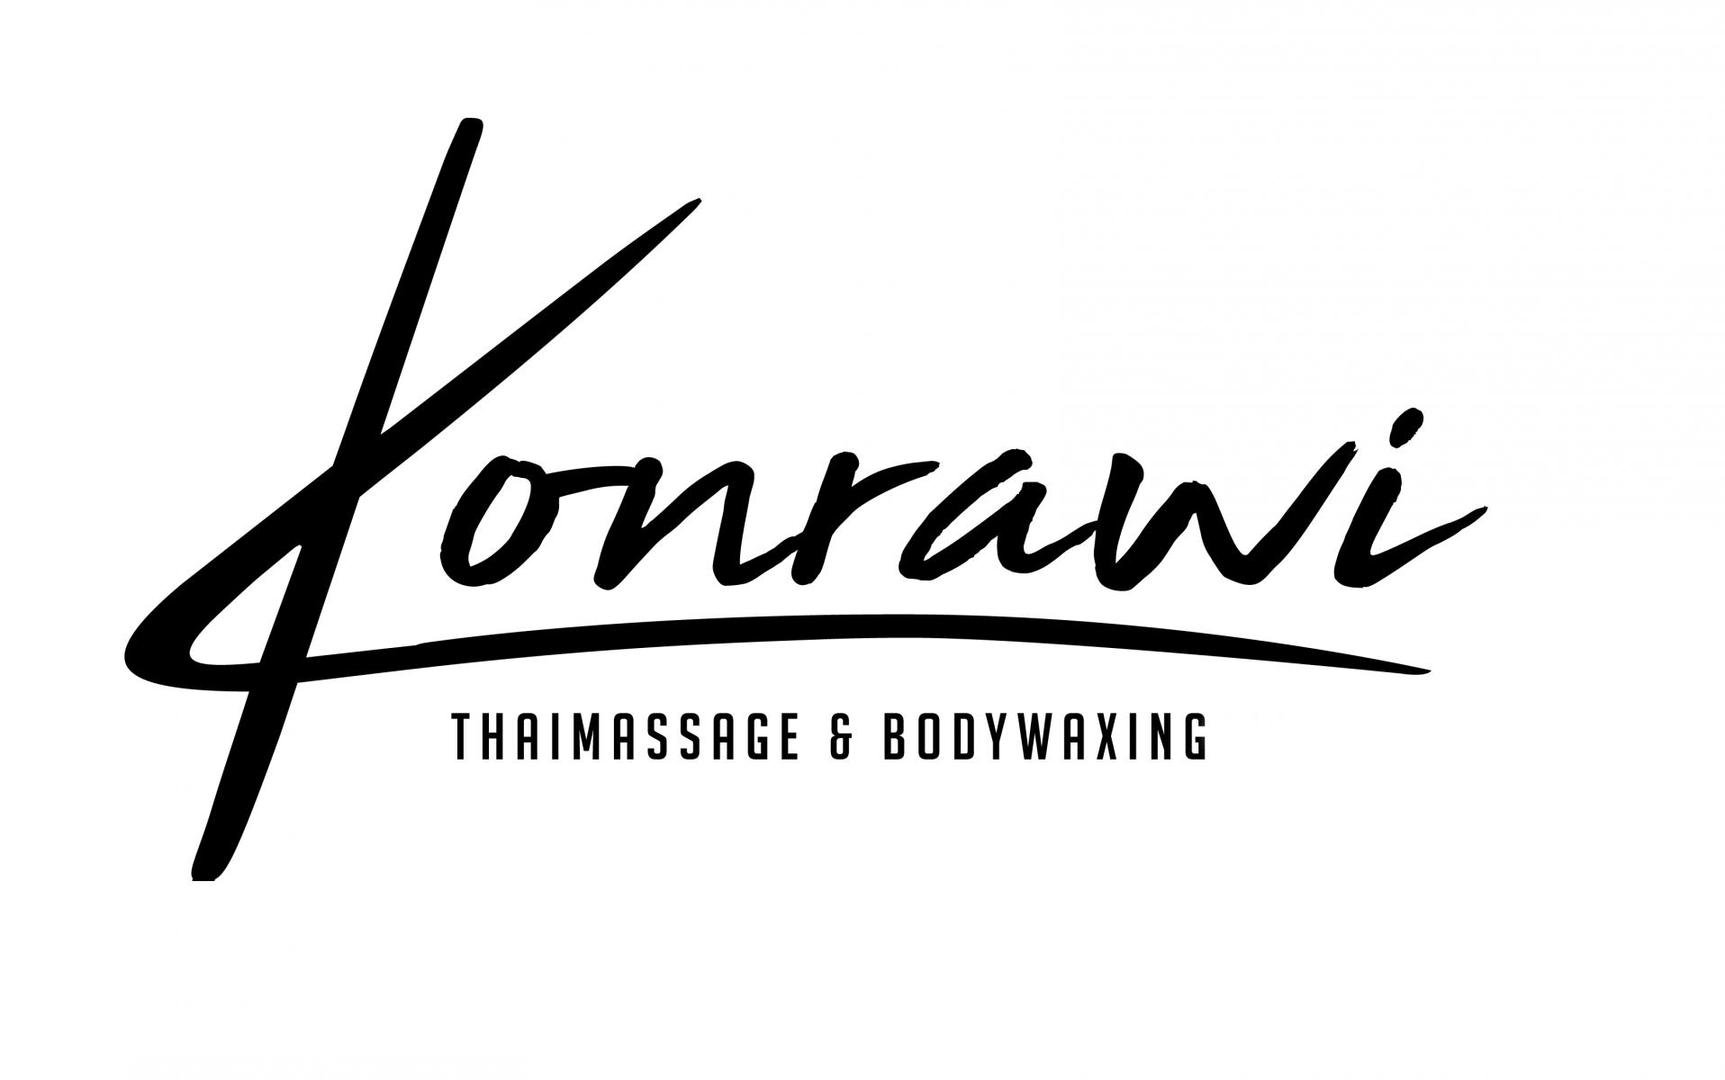 Konrawi Thaimassage & Bodywaxing Logo